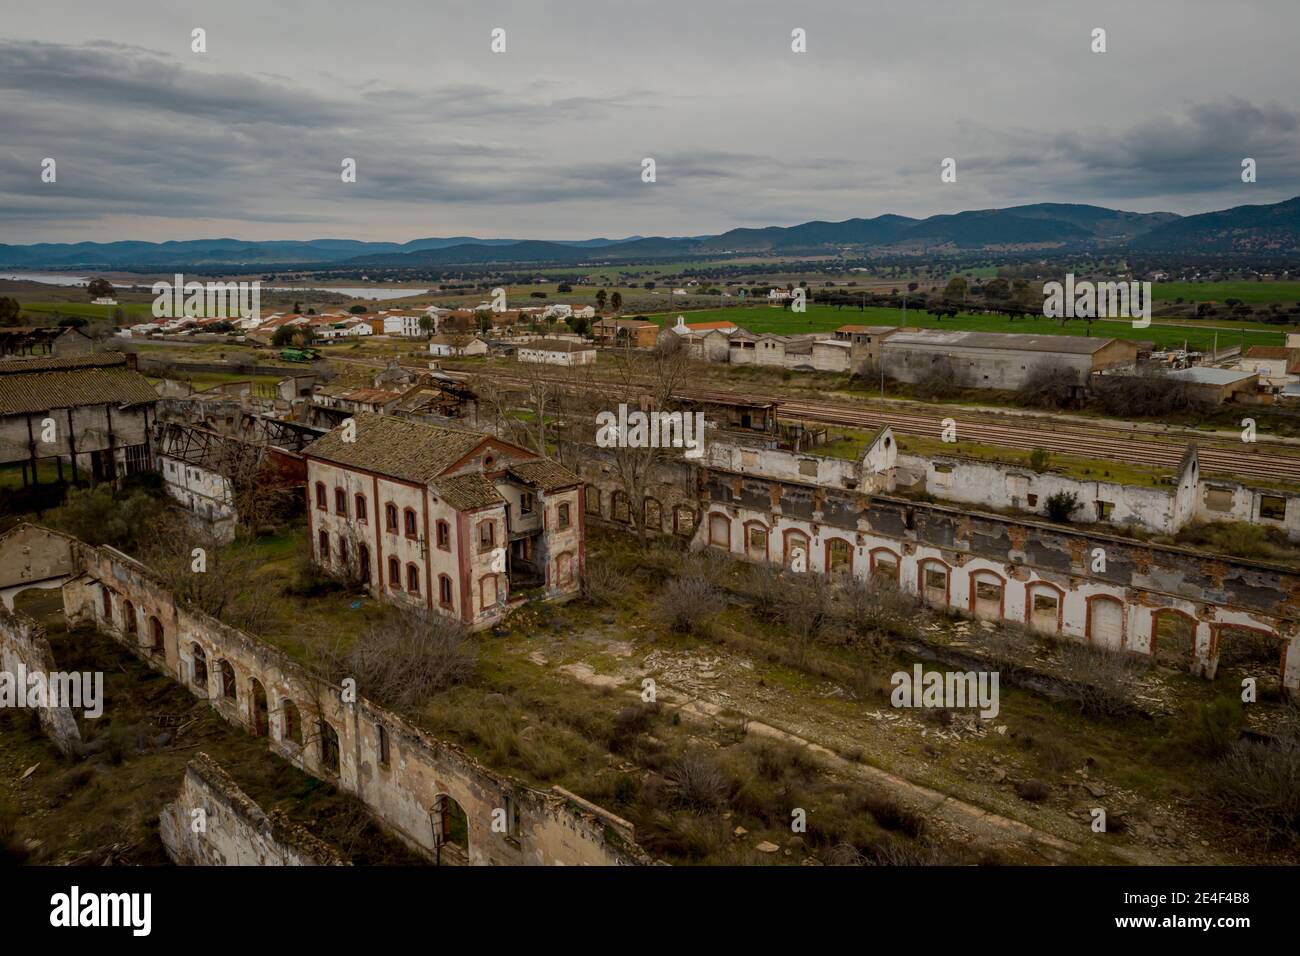 Vue aérienne de l'ancienne exploitation minière abandonnée peñarroya-pueblonuevo Espagne Lieux industriels abandonnés Banque D'Images